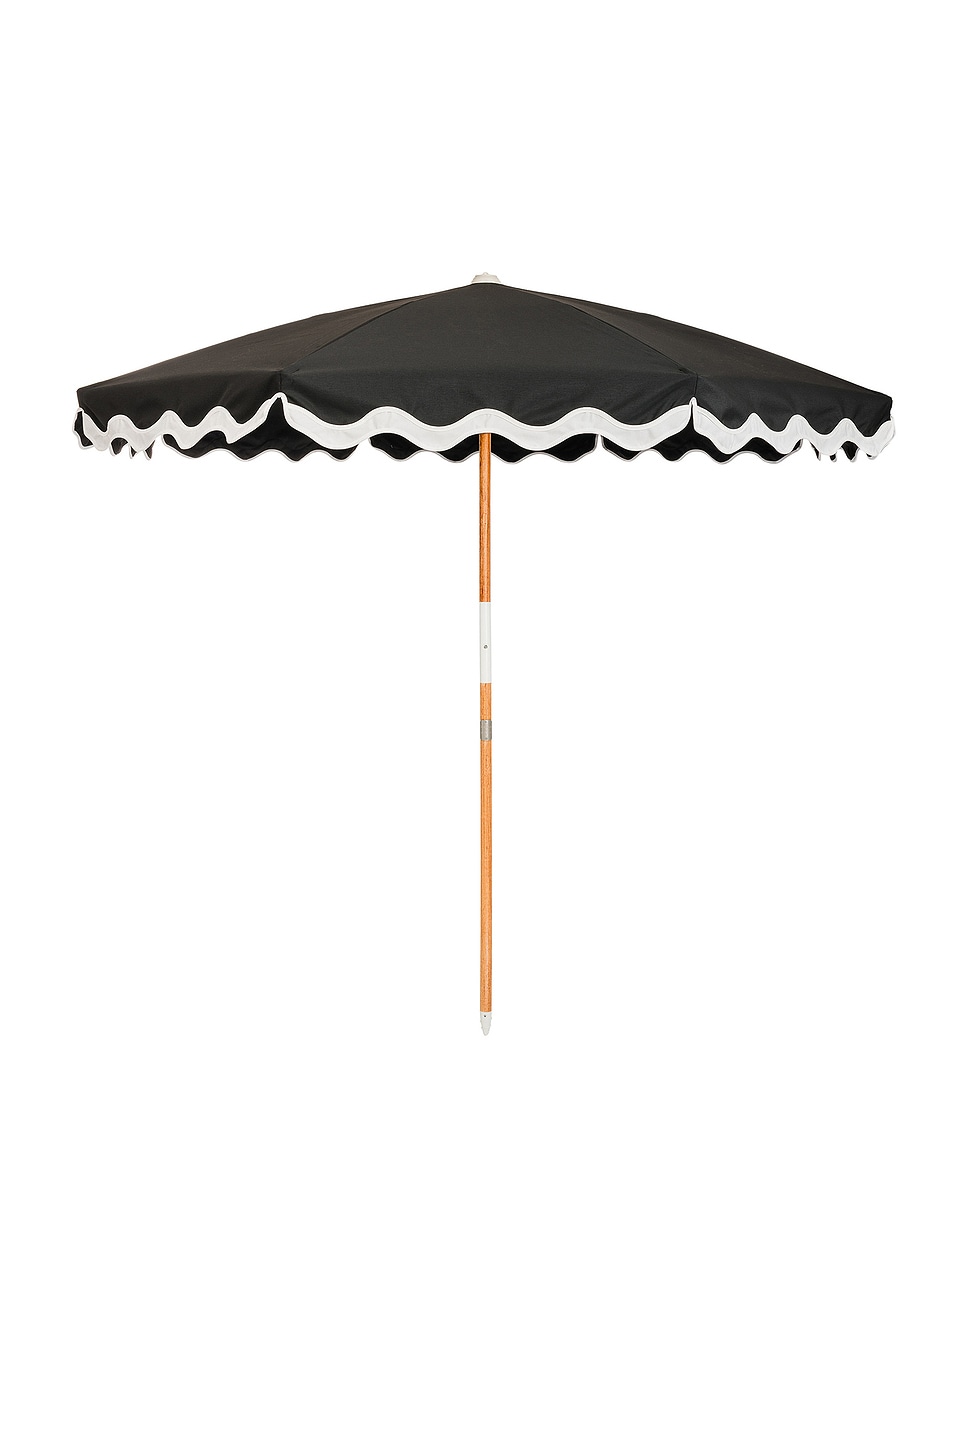 Image 1 of business & pleasure co. Amalfi Umbrella in Riviera Black